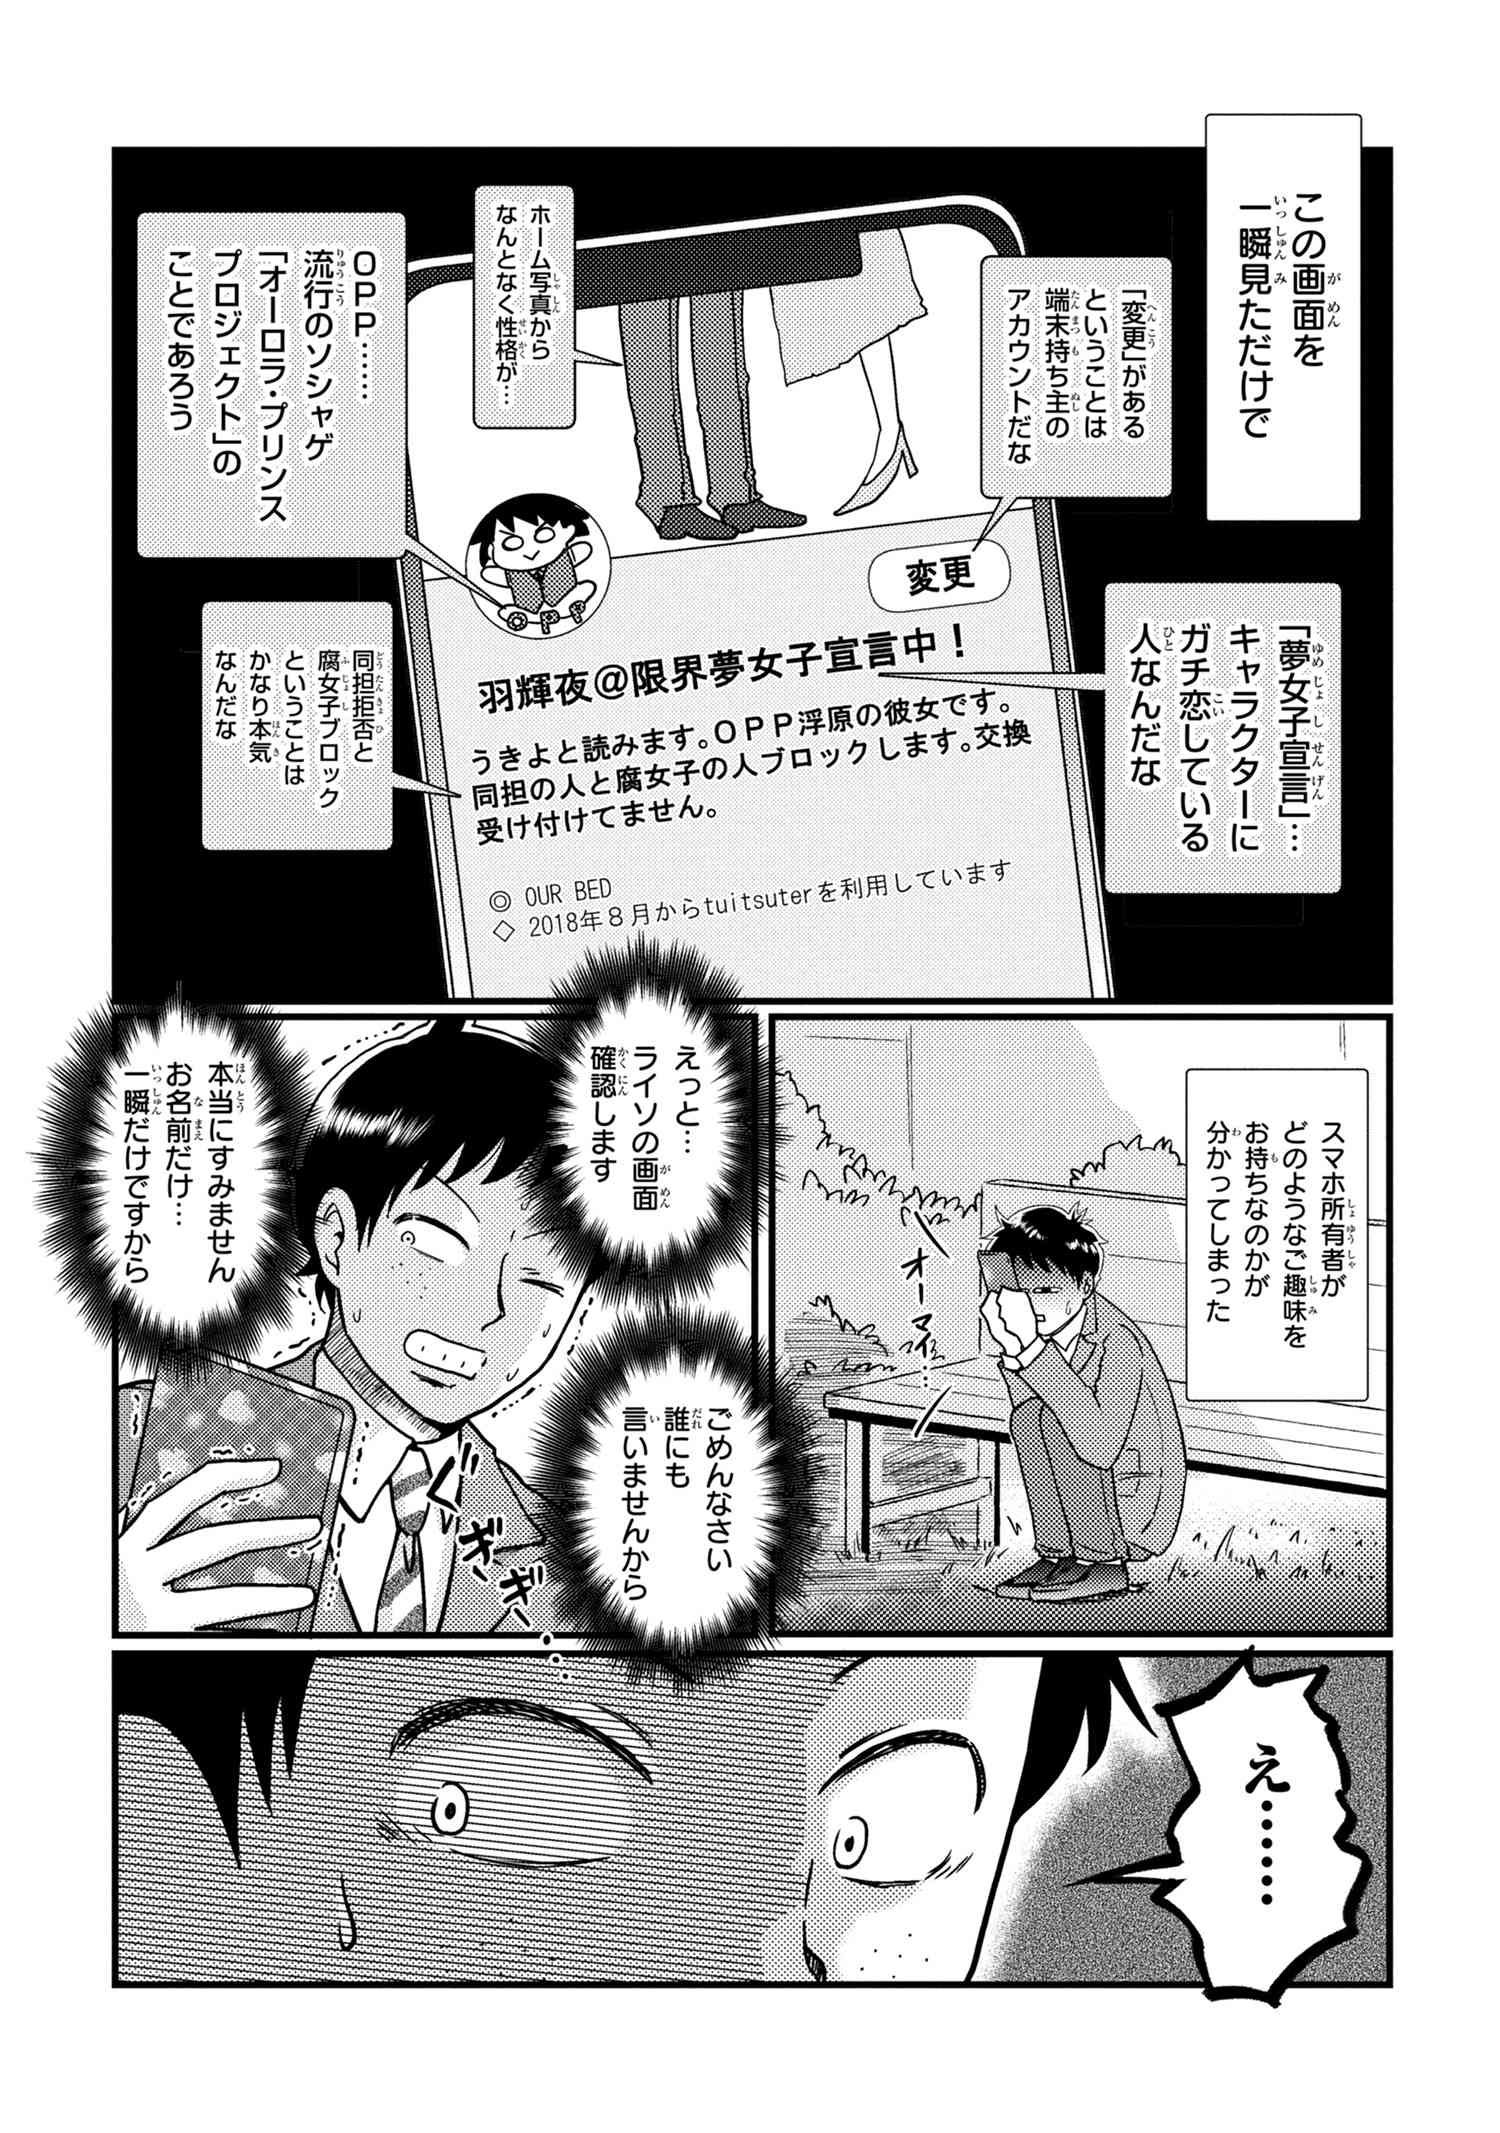 Houjou Urara no renai shousetsu o kaki nasai! - Chapter 10 - Page 3